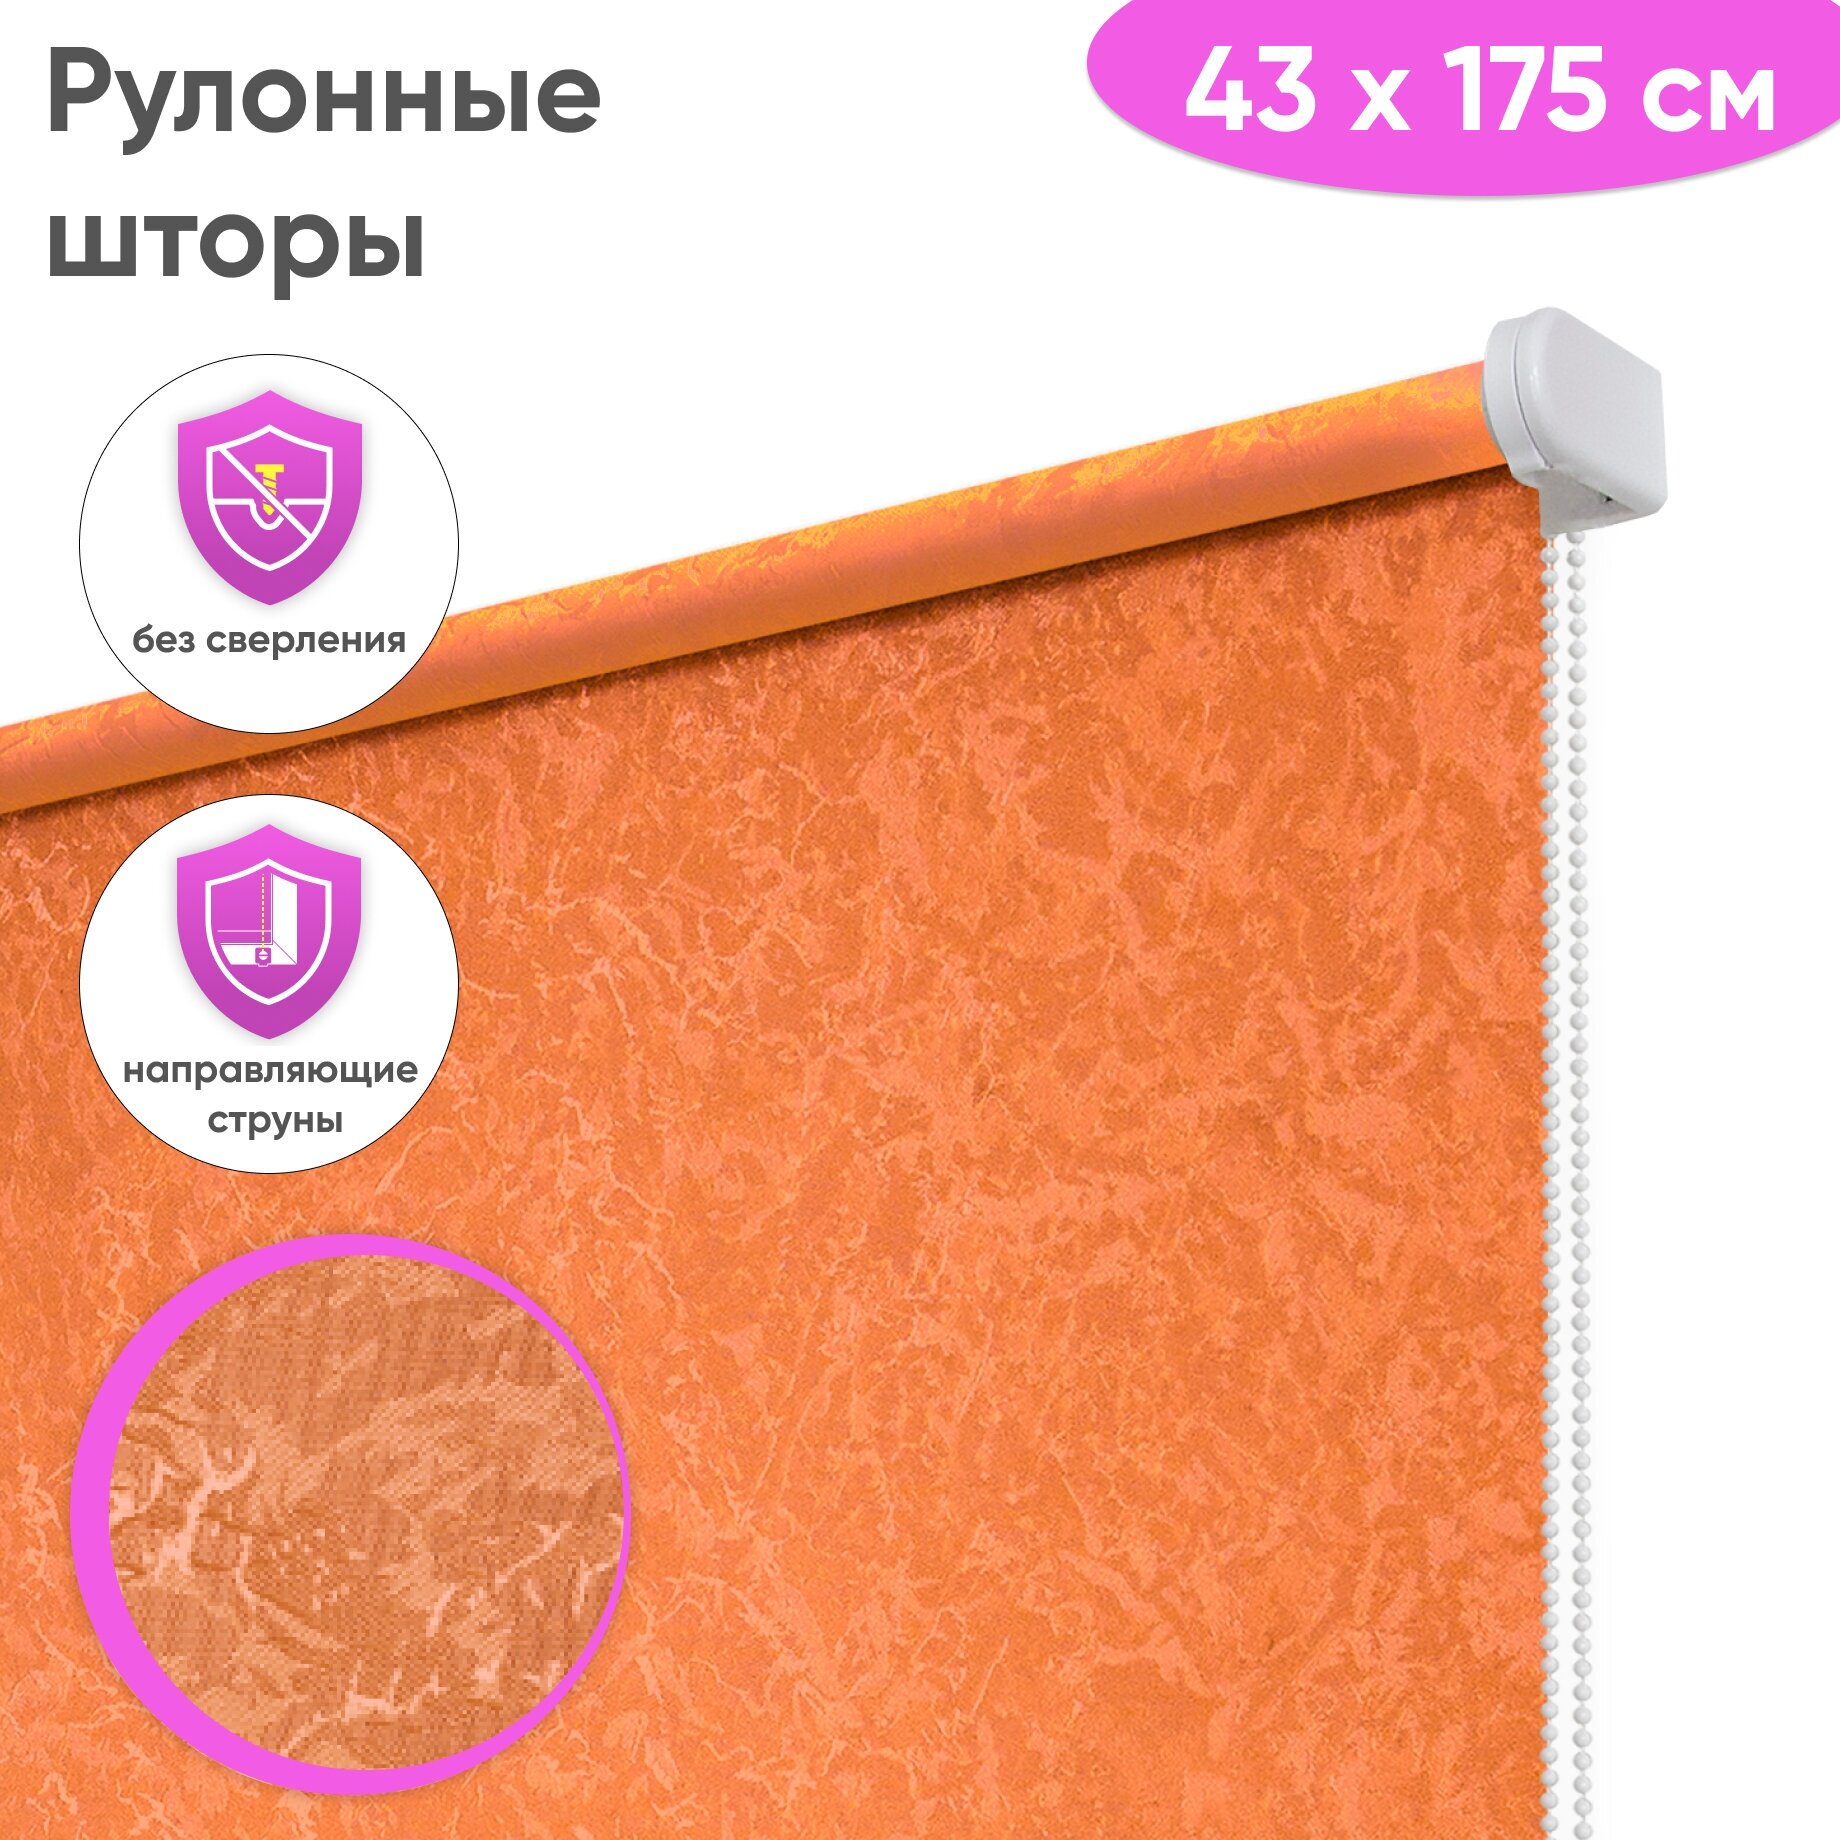 Рулонные шторы Сноу, 43 x 175 см, цвет оранжевый